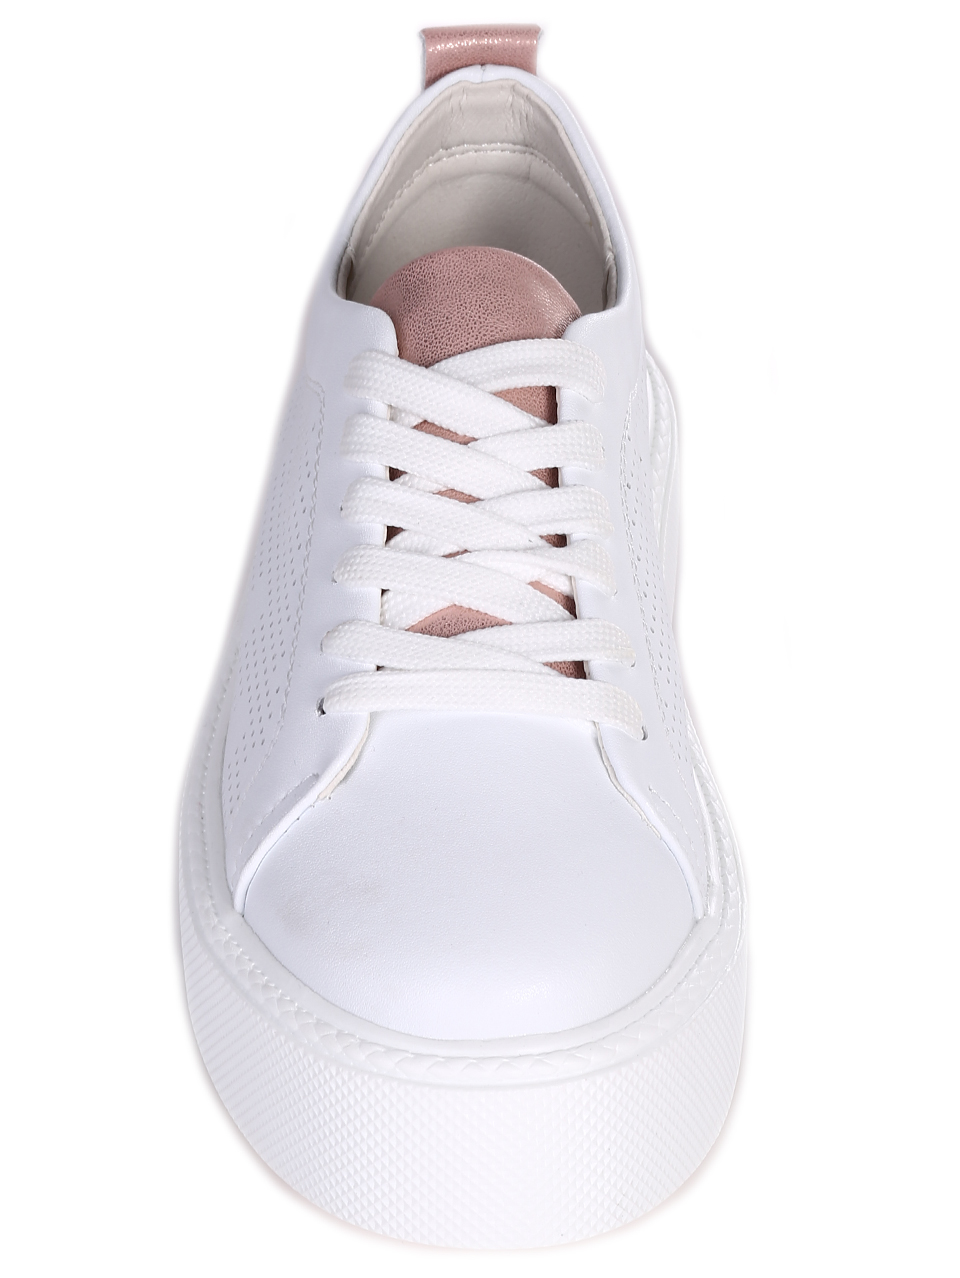 Eжедневни дамски обувки от естествена кожа в бяло 3AF-24102 white (23175)